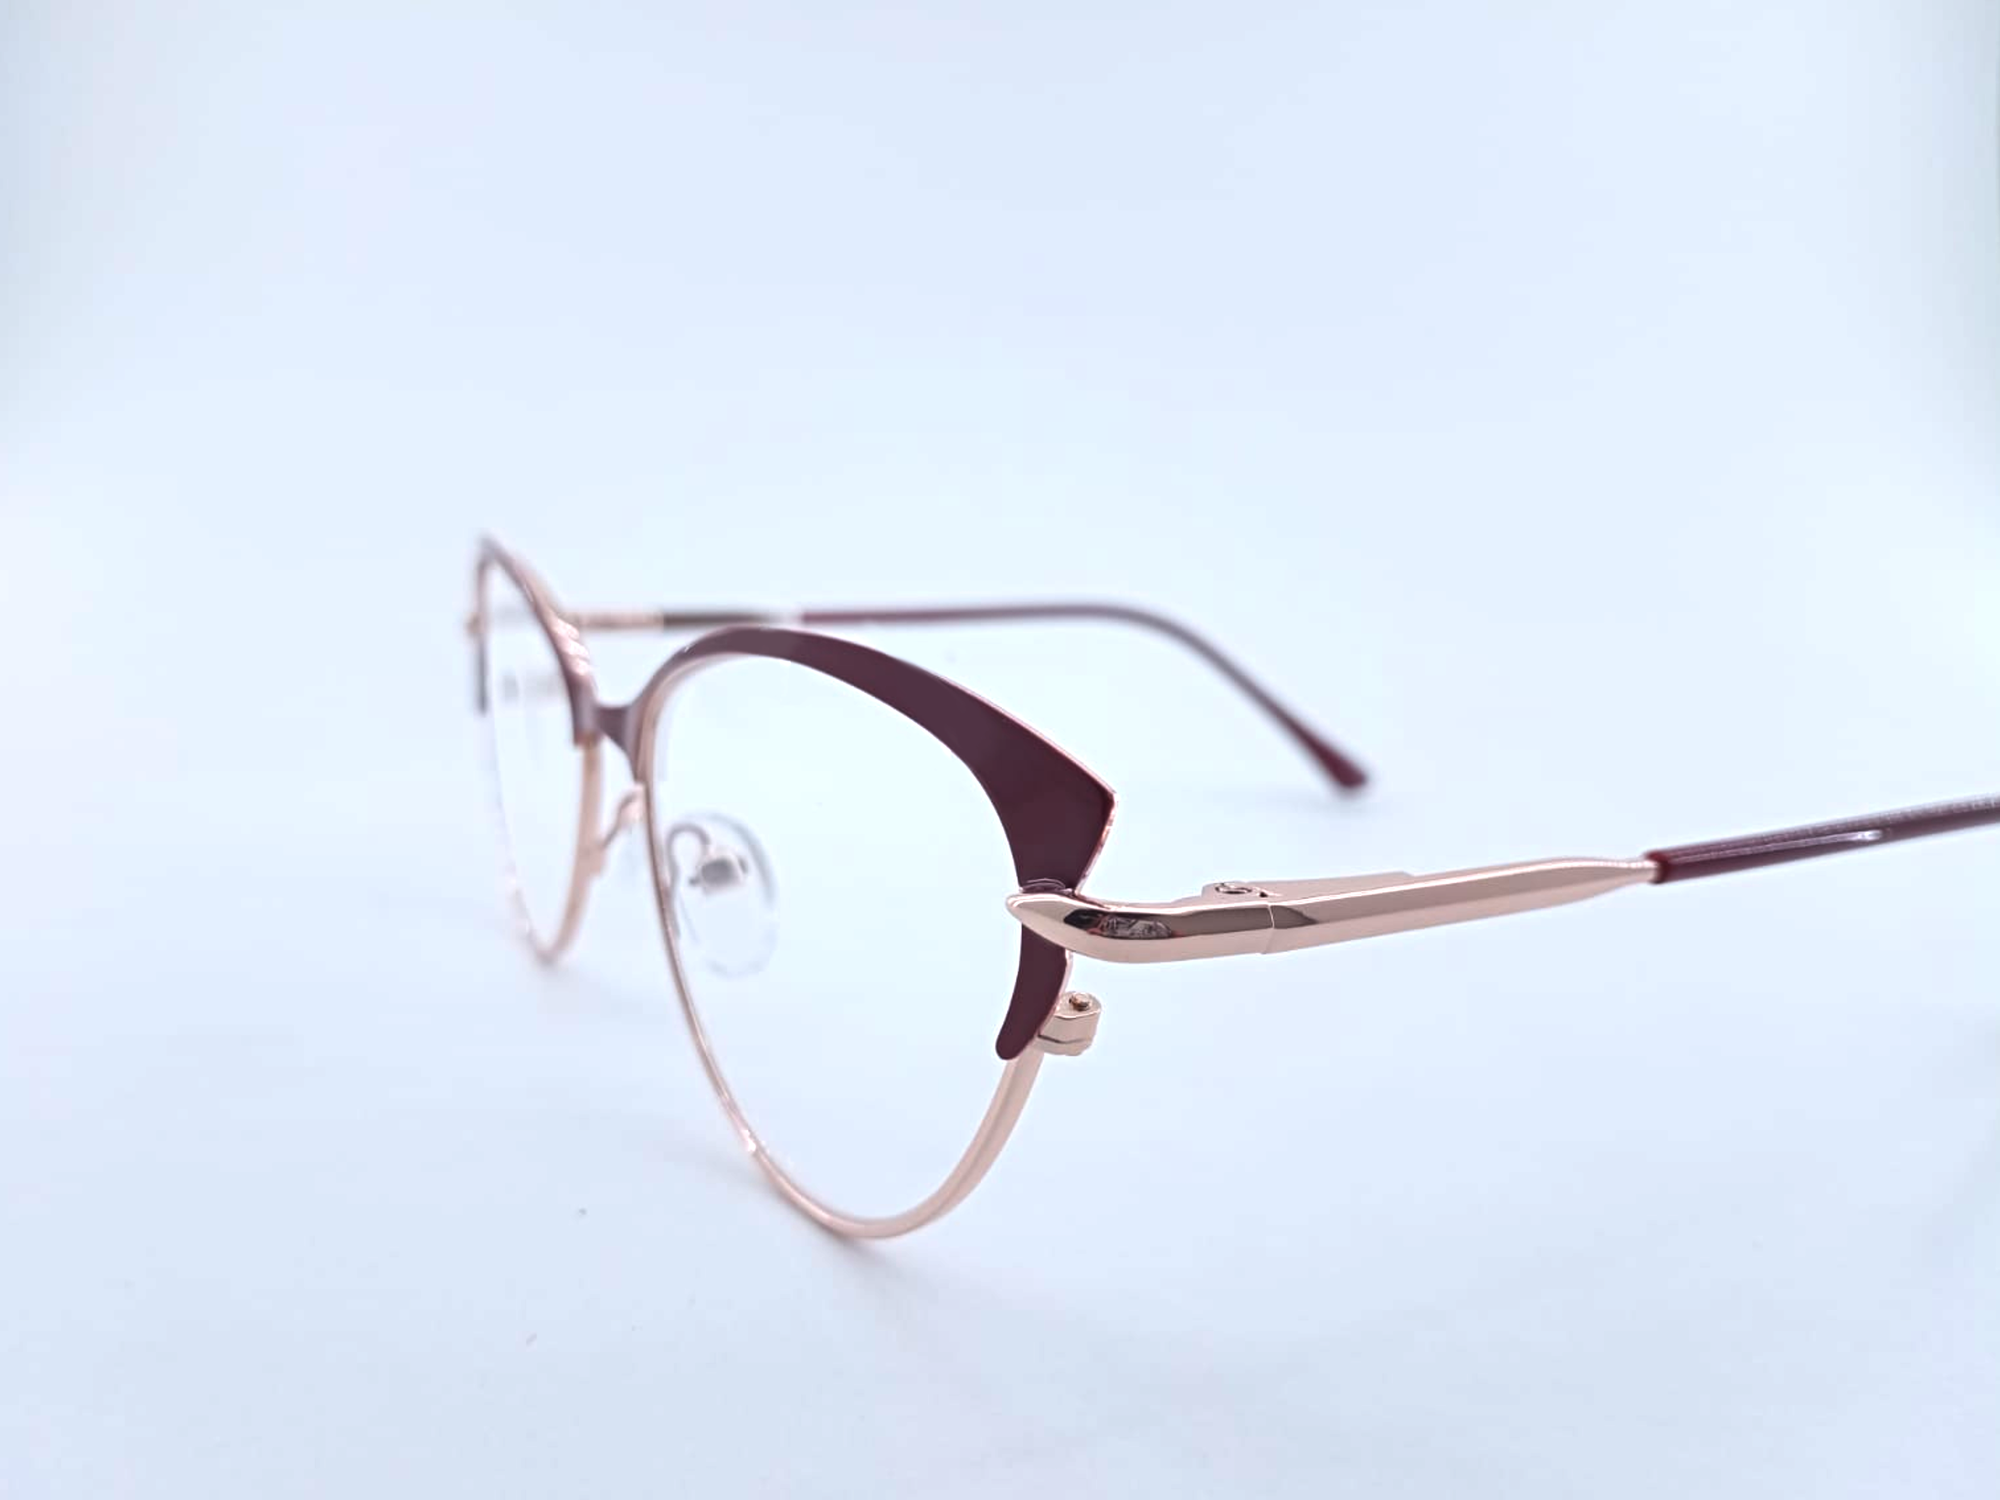 Готовые очки для зрения с межцентровым расстоянием 58-60 мм и диоптриями +3.5